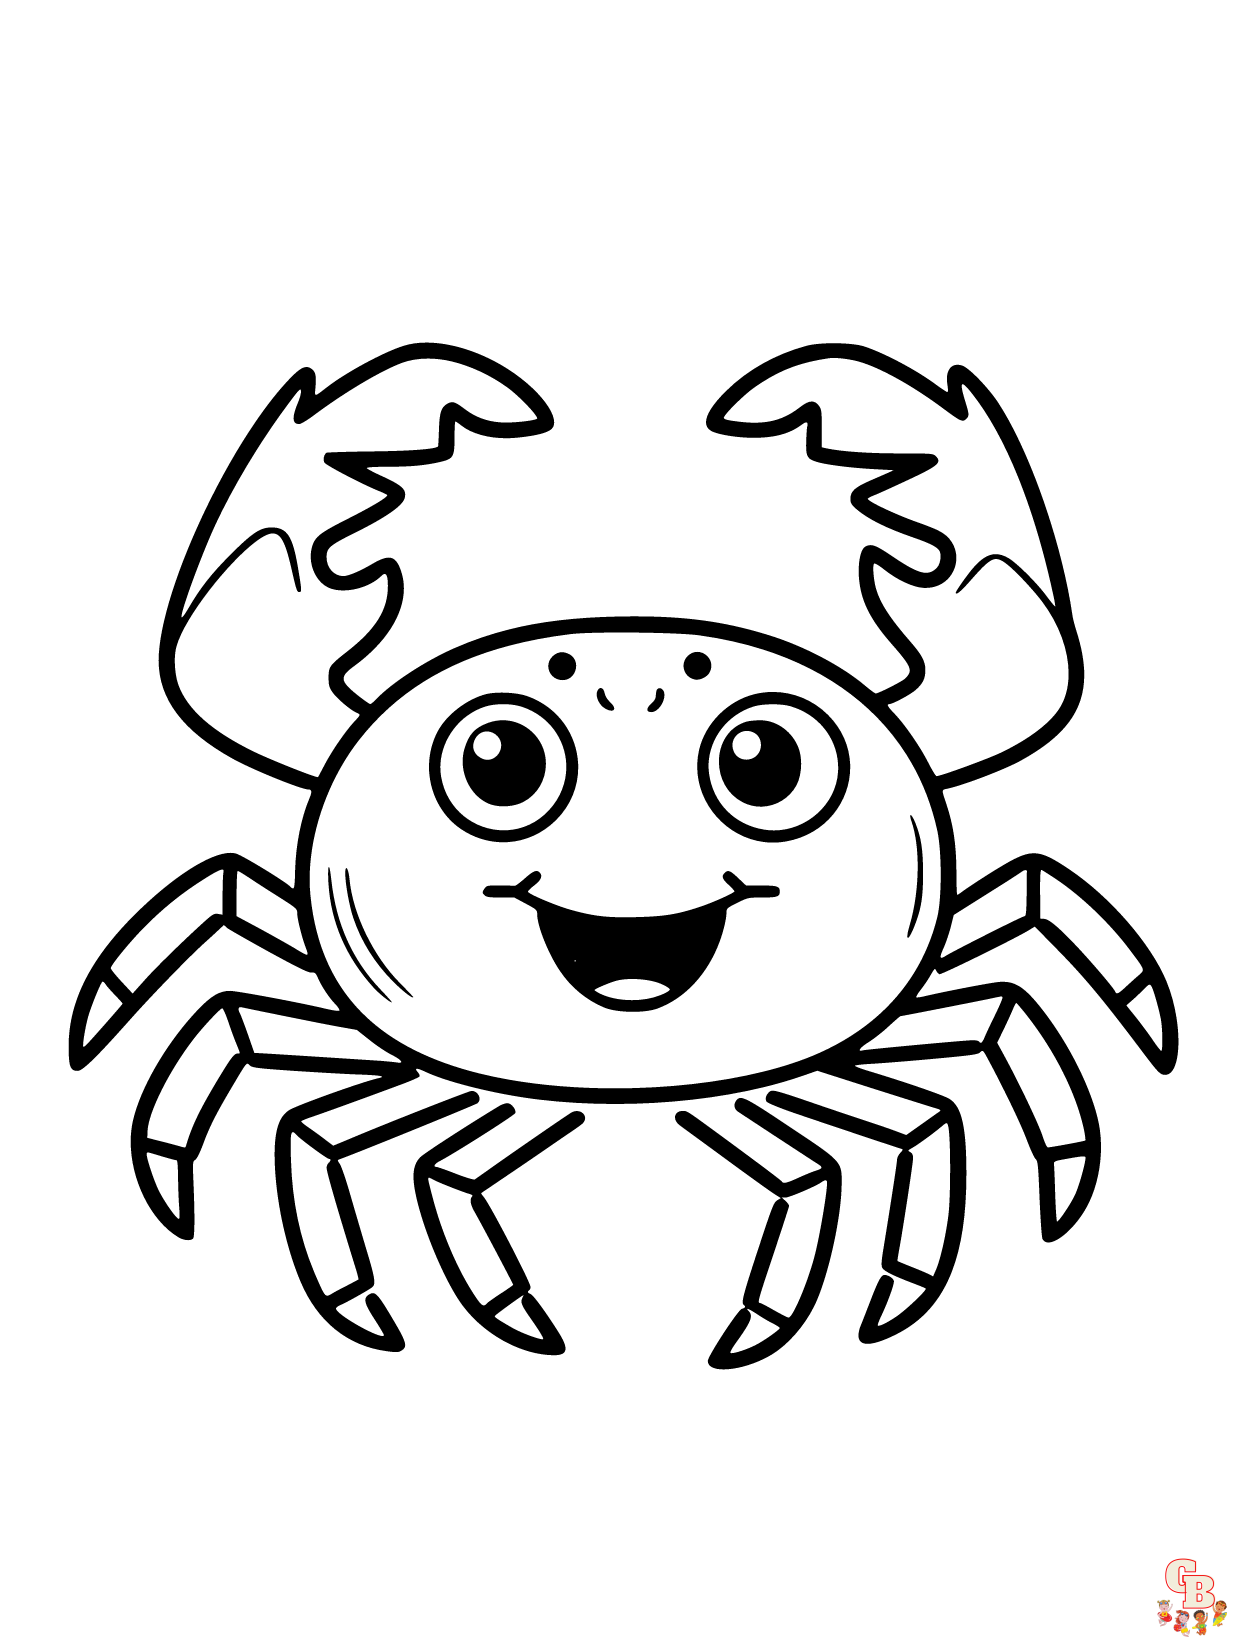 Printable Crab coloring sheets